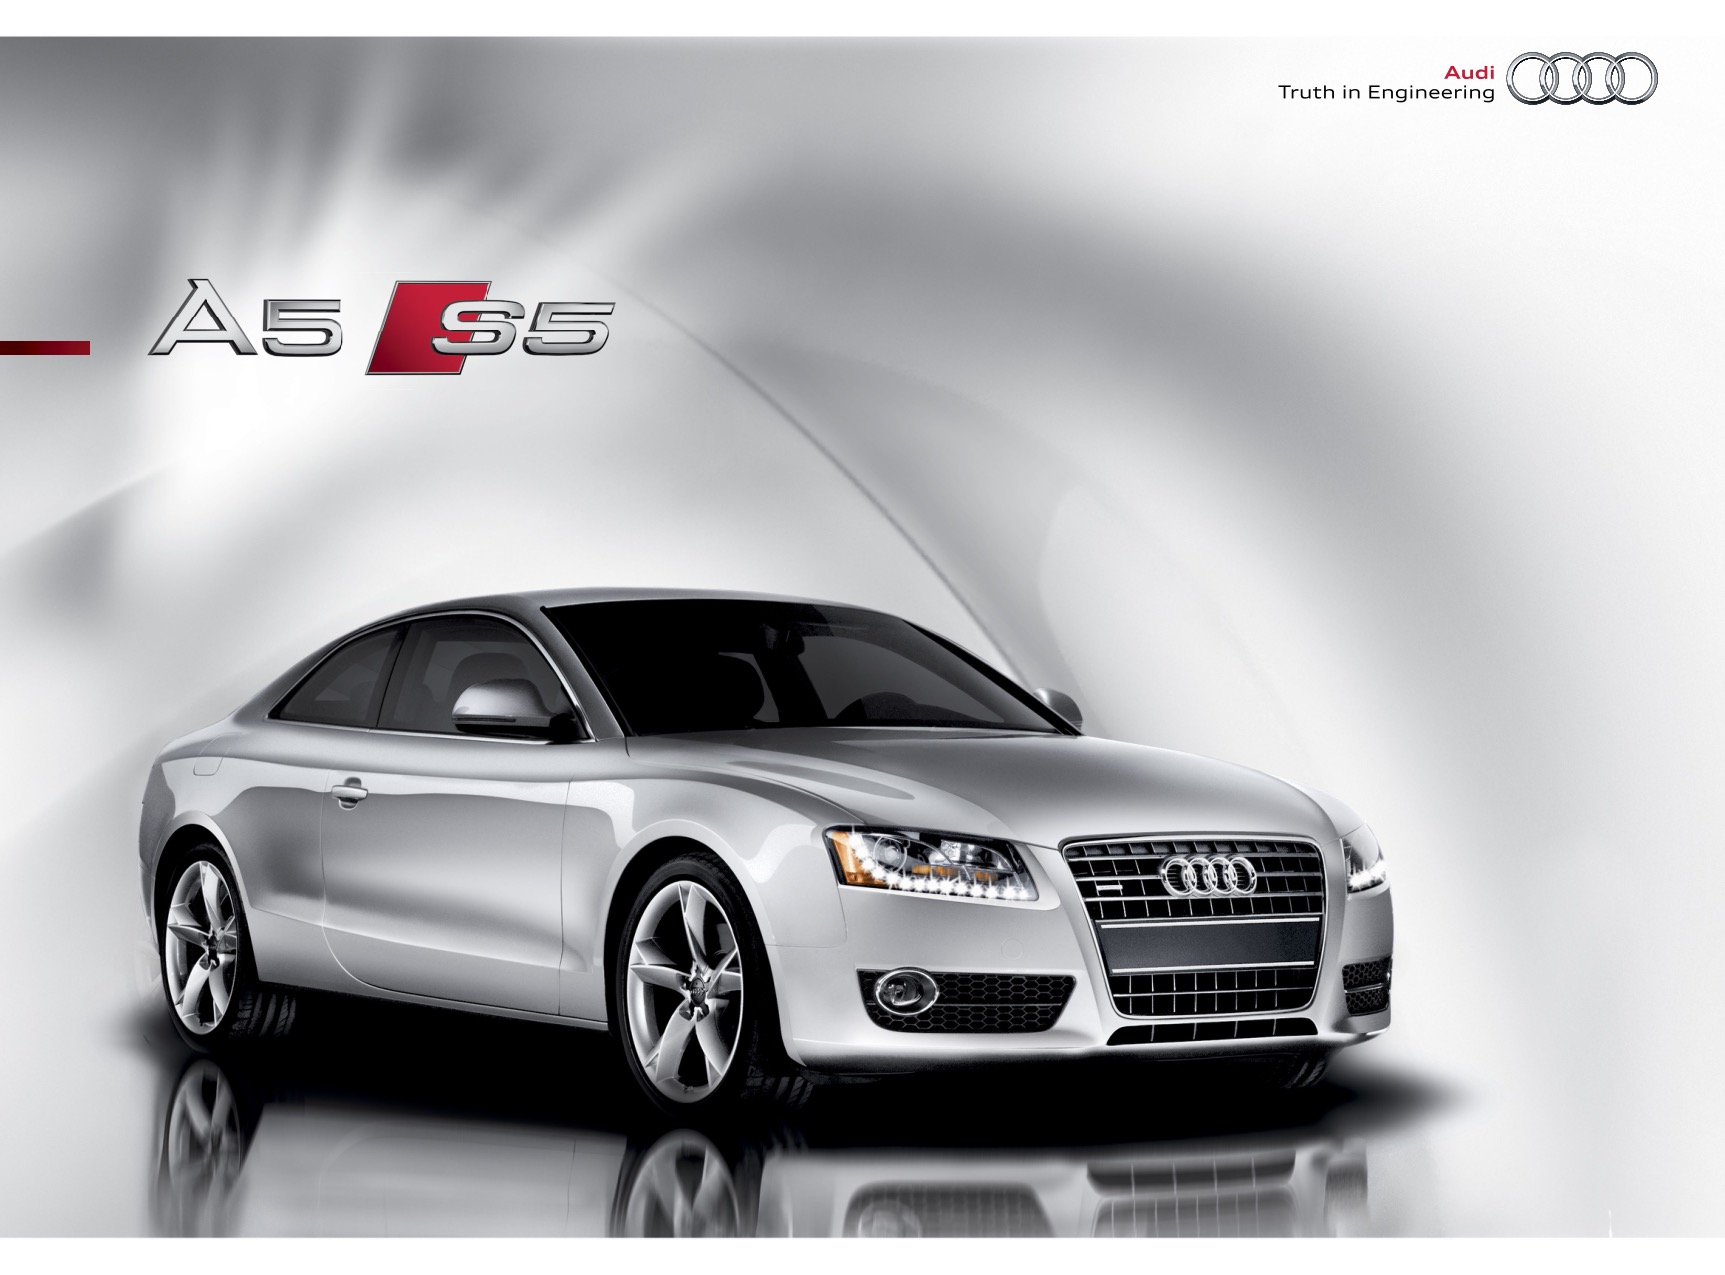 2010 Audi A5 Brochure